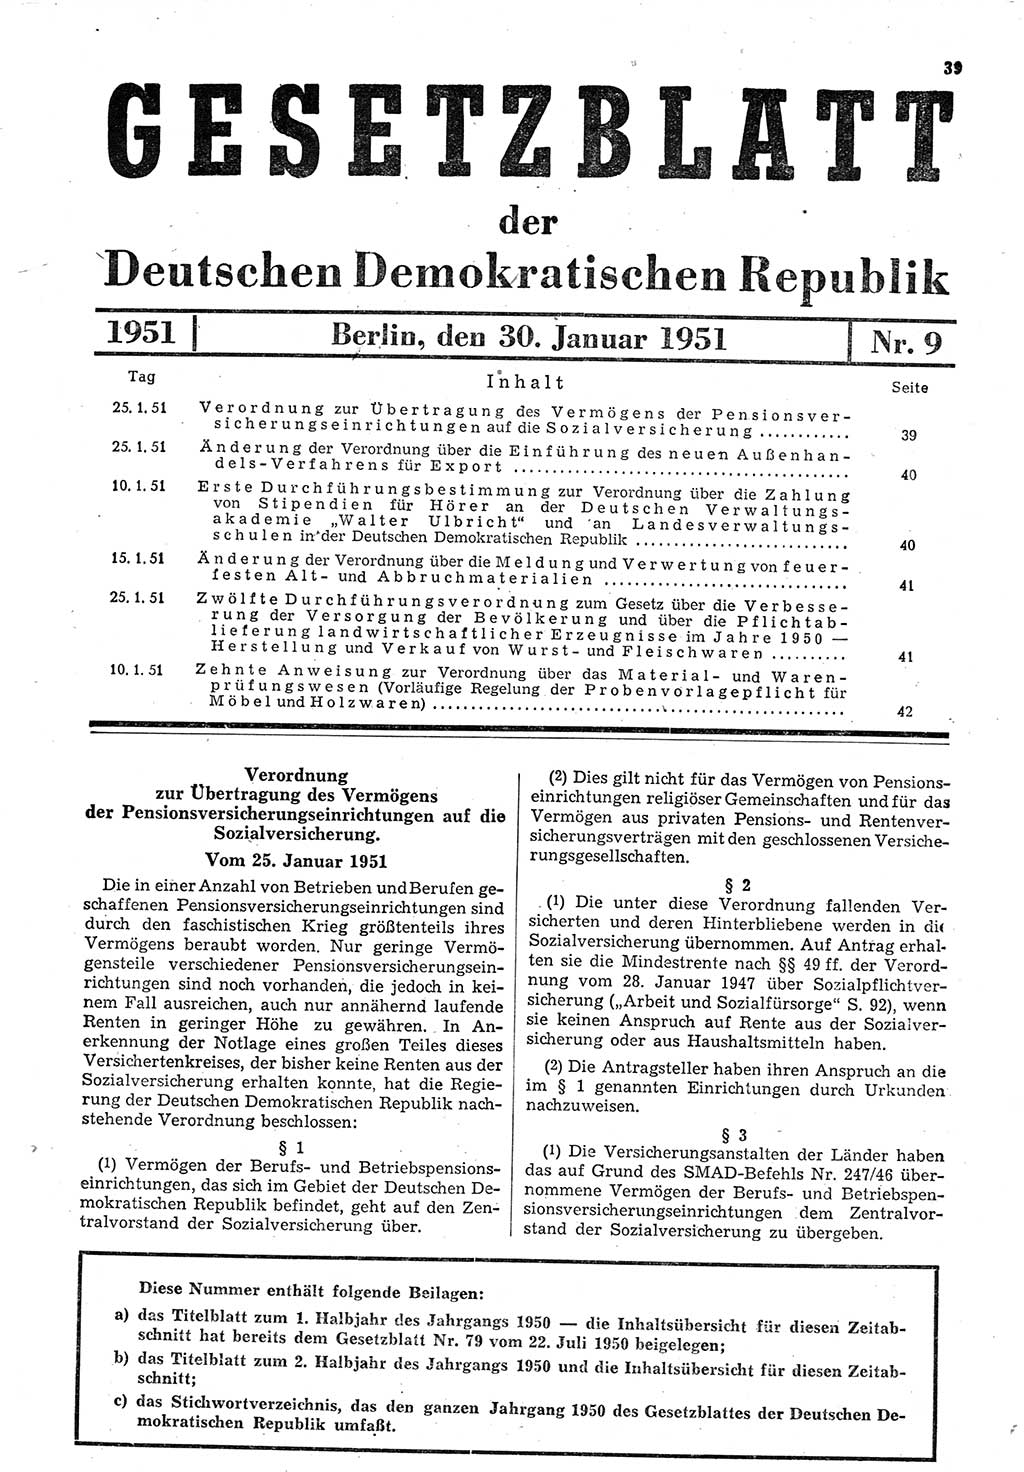 Gesetzblatt (GBl.) der Deutschen Demokratischen Republik (DDR) 1951, Seite 39 (GBl. DDR 1951, S. 39)